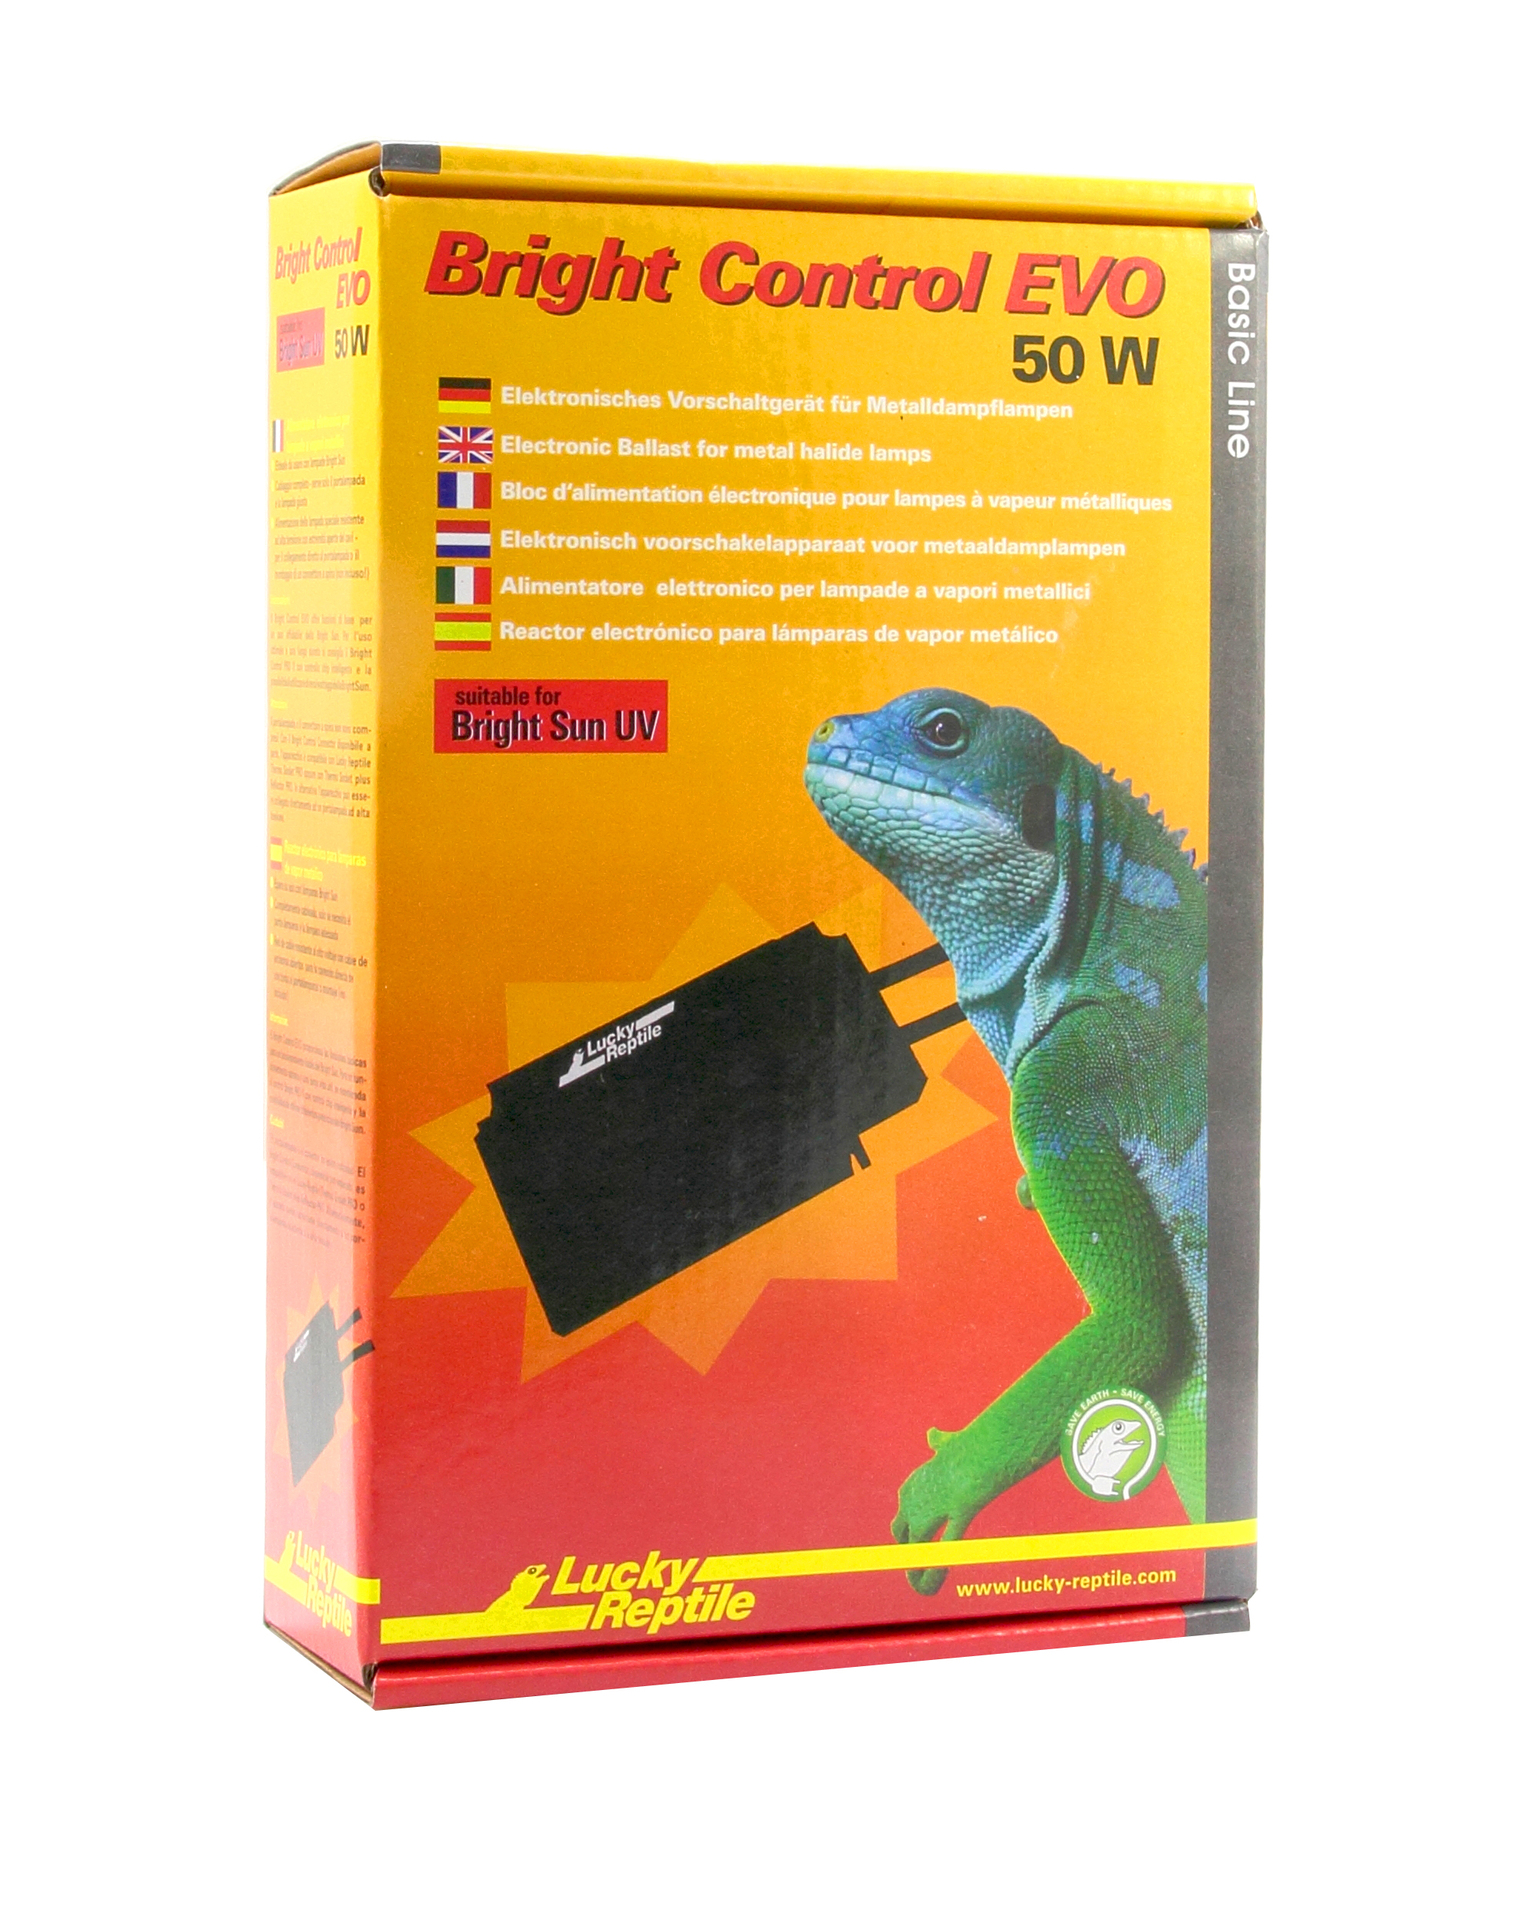 Bright Control EVO